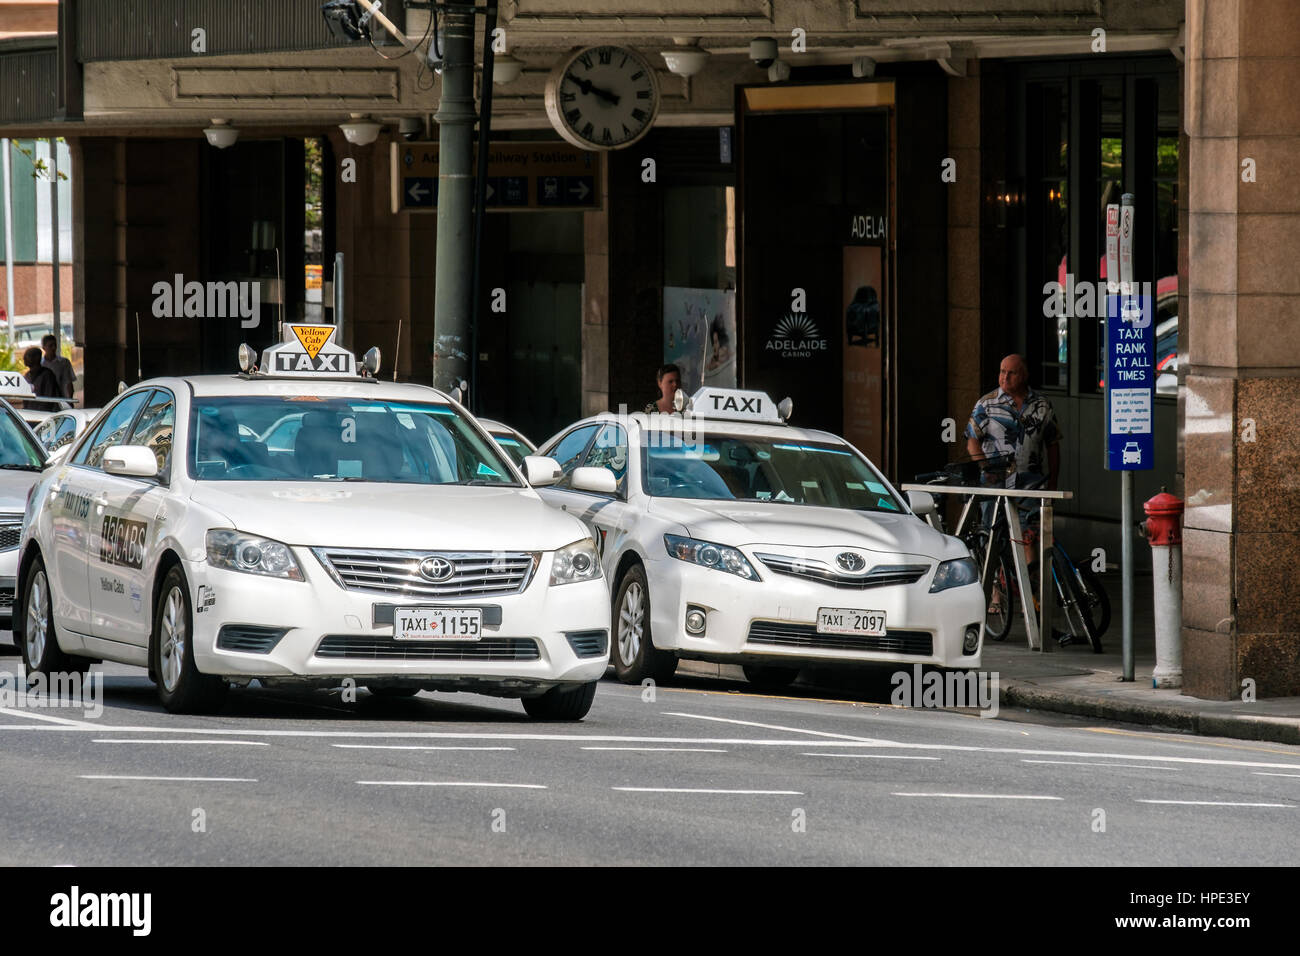 Adelaide, Australien - 11. November 2016: Taxi-Autos in der Nähe von Adelaide Bahnhof gesehen auf der Nordterrasse an einem Tag. Toyota Camry ist das meisten po Stockfoto